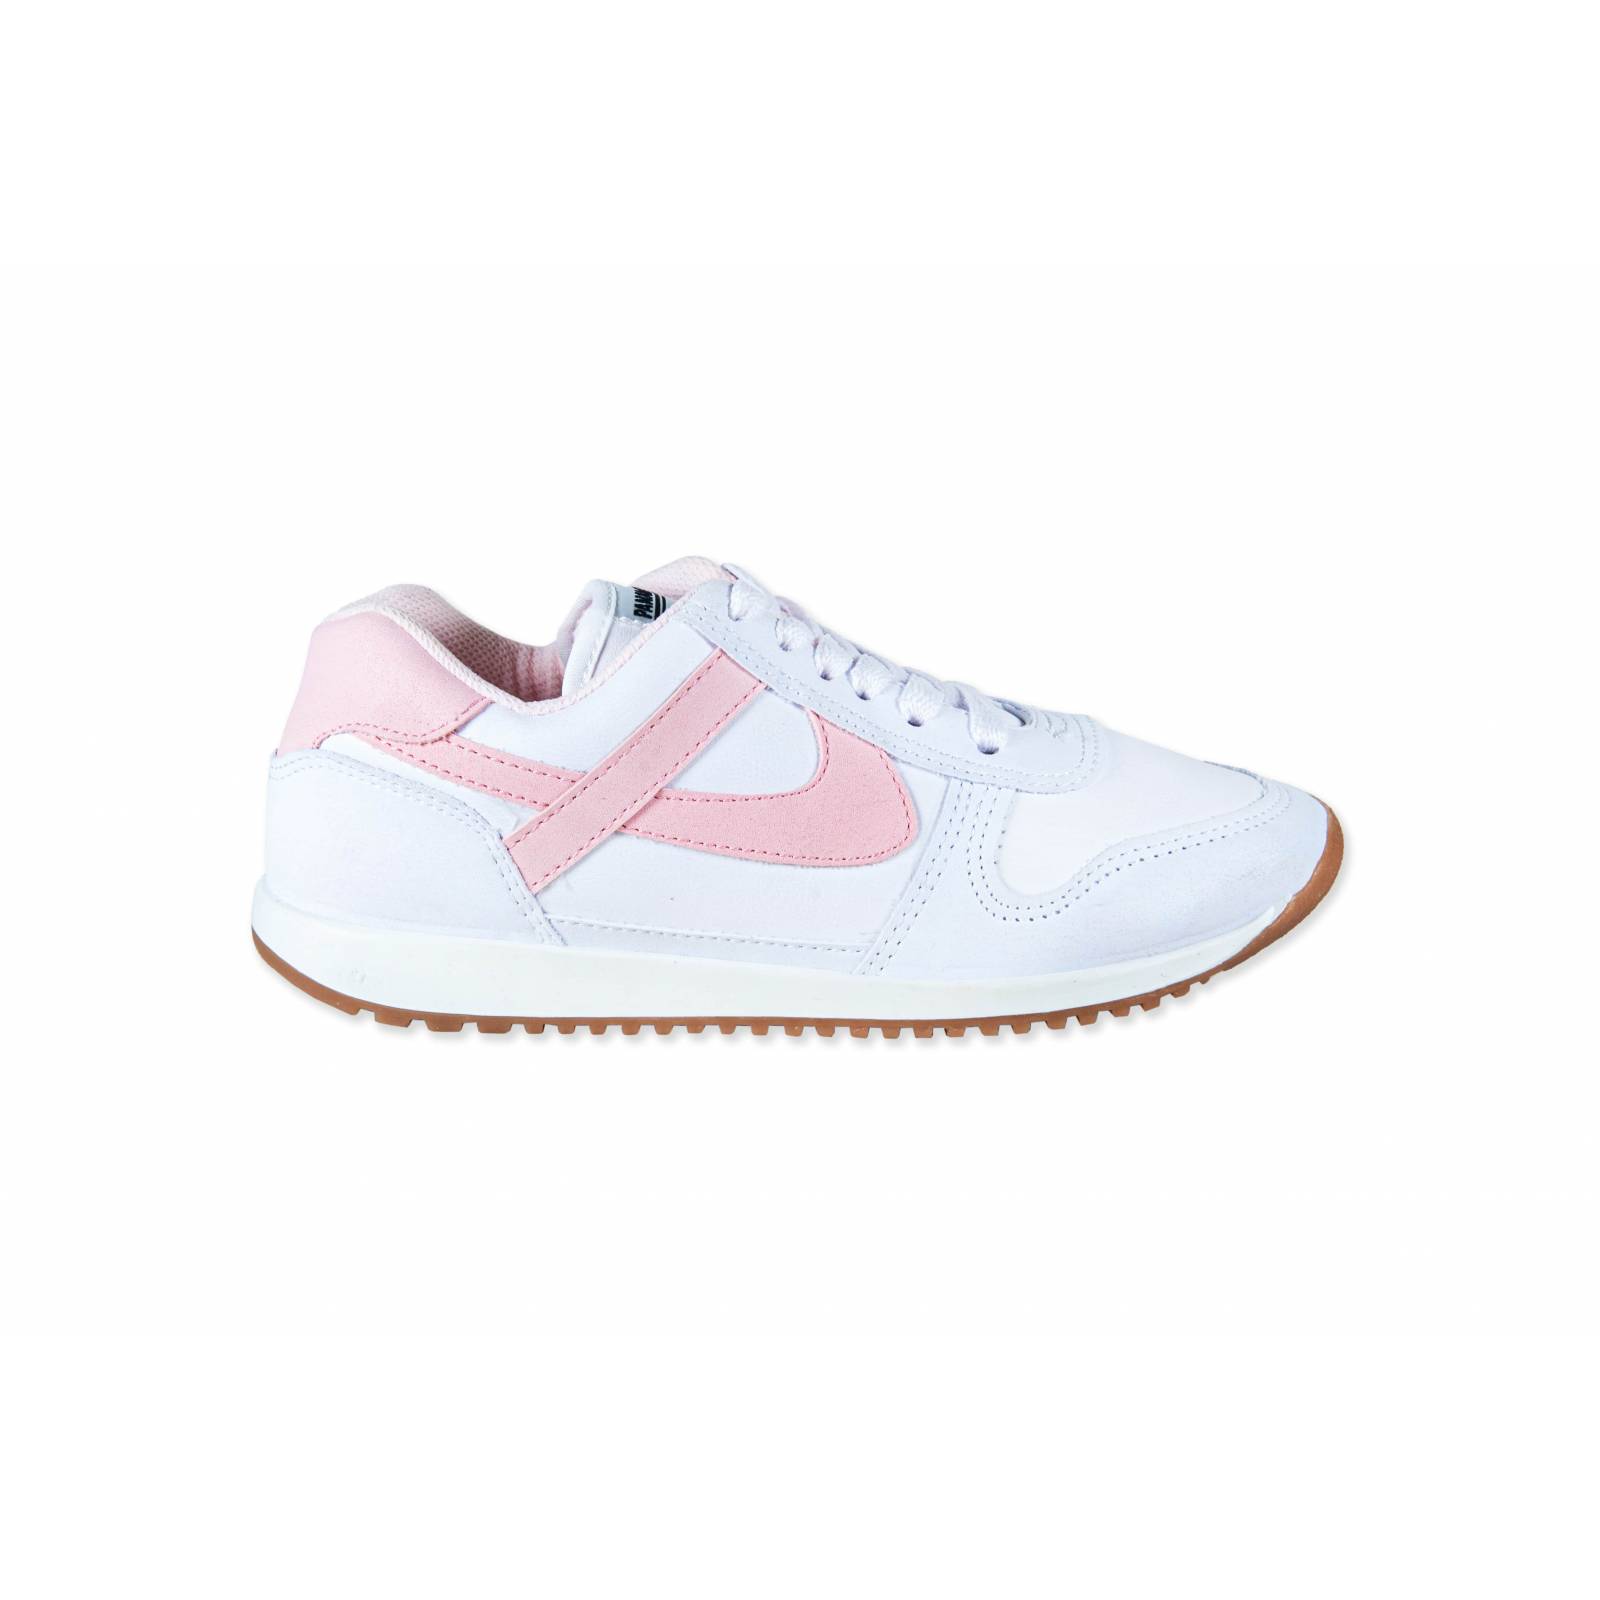 Tenis Sneakers Panam Mujer Plataforma 3.5 cm rosa blanco 1056574